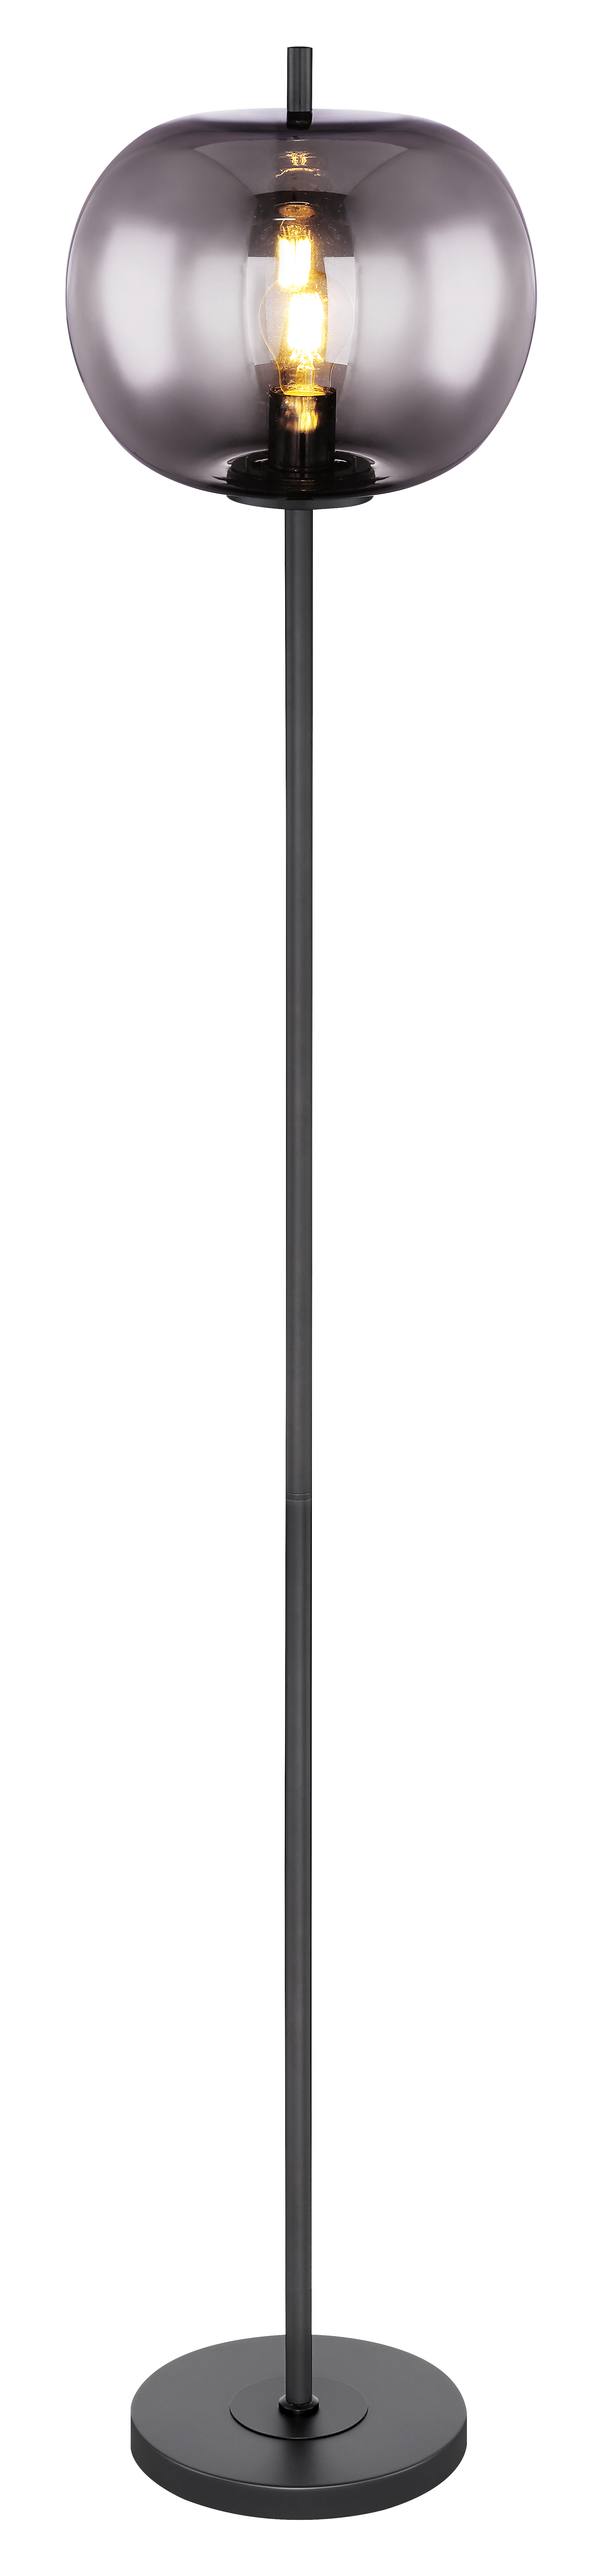 Stehleuchte schwarz - Metall Glas - 15345S -